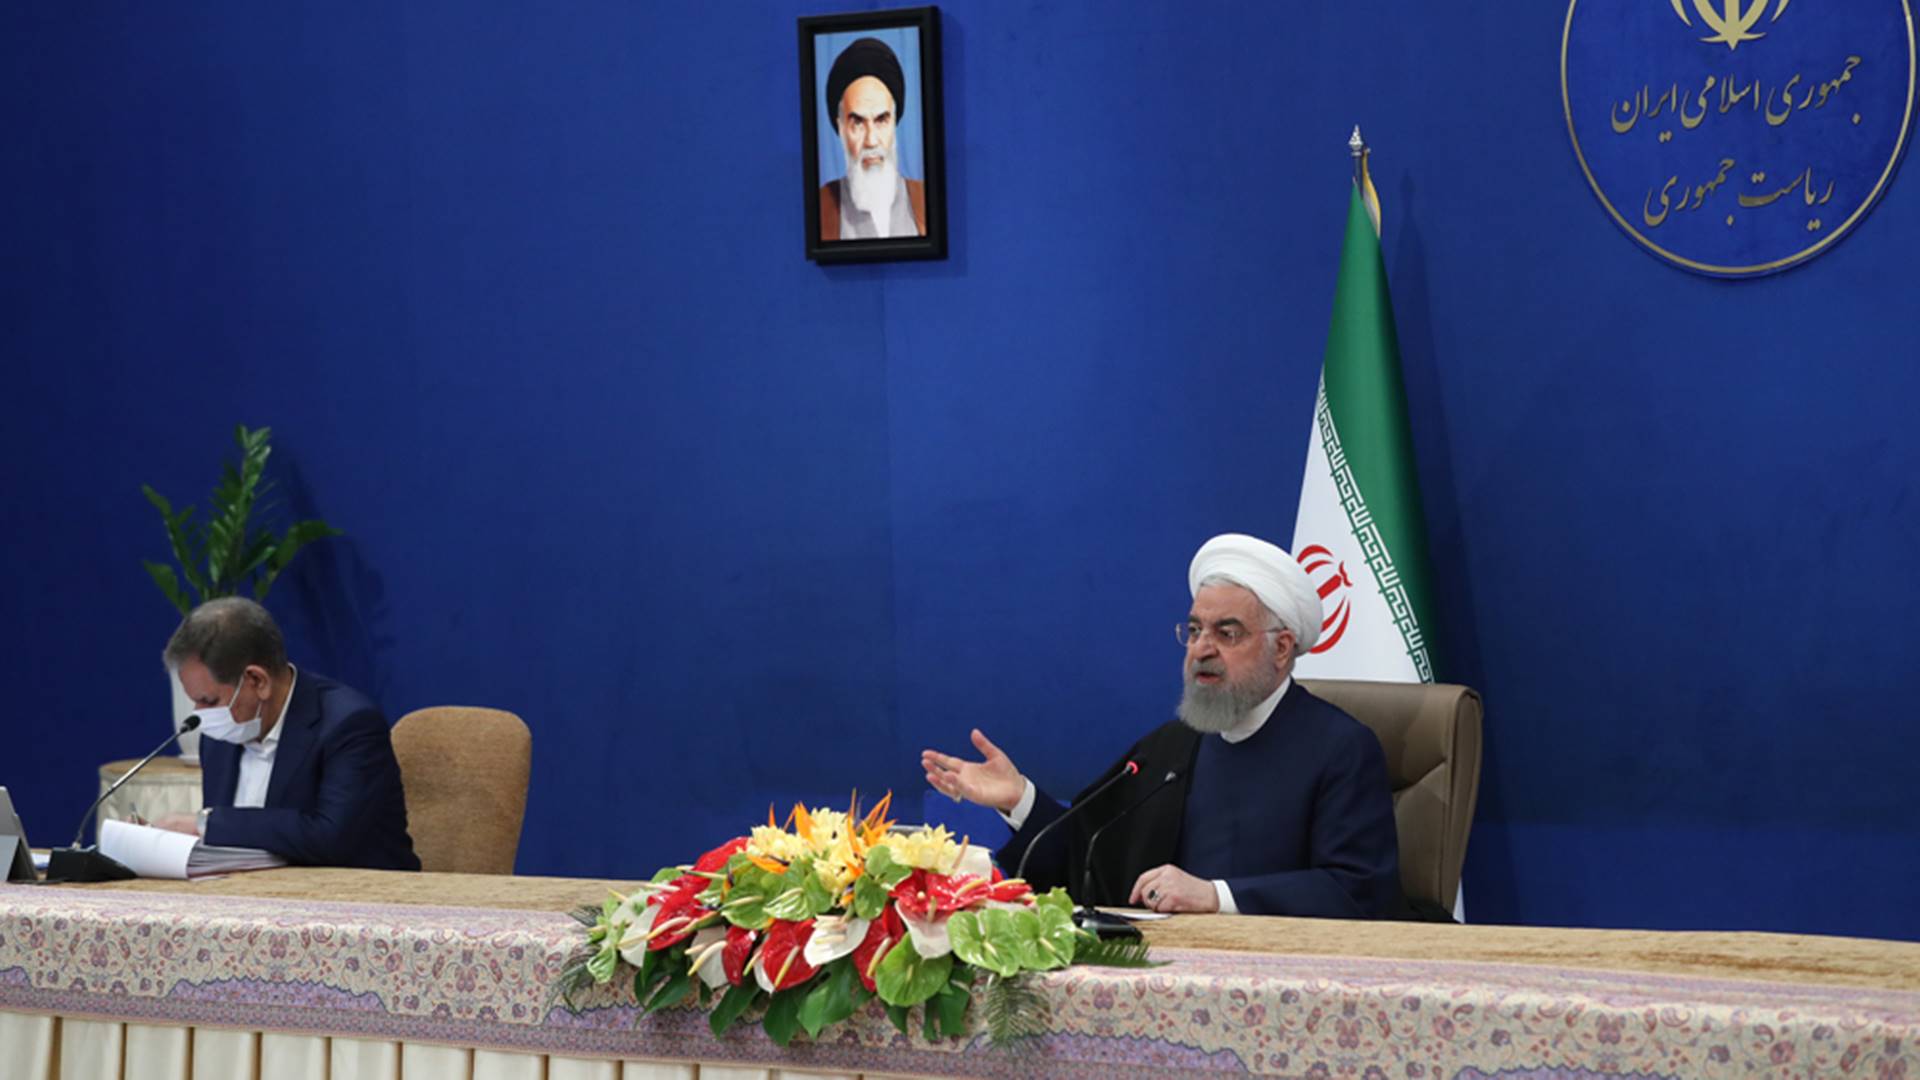 Iran 2021: Mogućnosti i izazovi povratka Irana nuklearnom sporazumu iz 2015